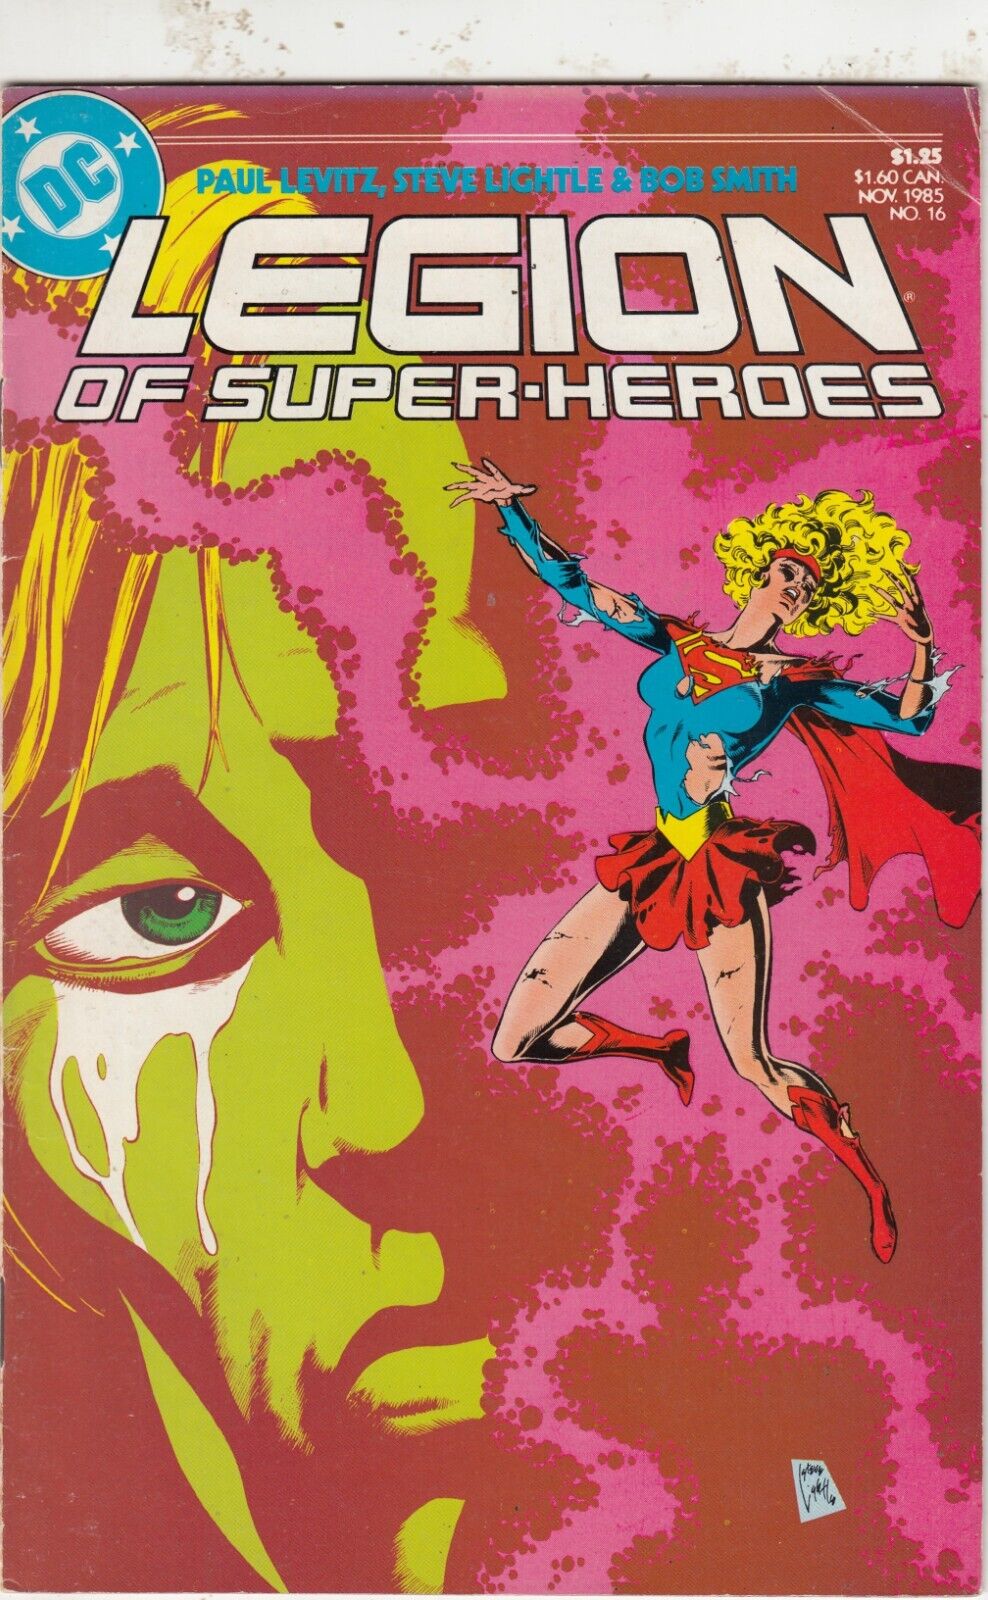 LEGION OF SUPER-HEROES #   VF/FN   DC COMICS